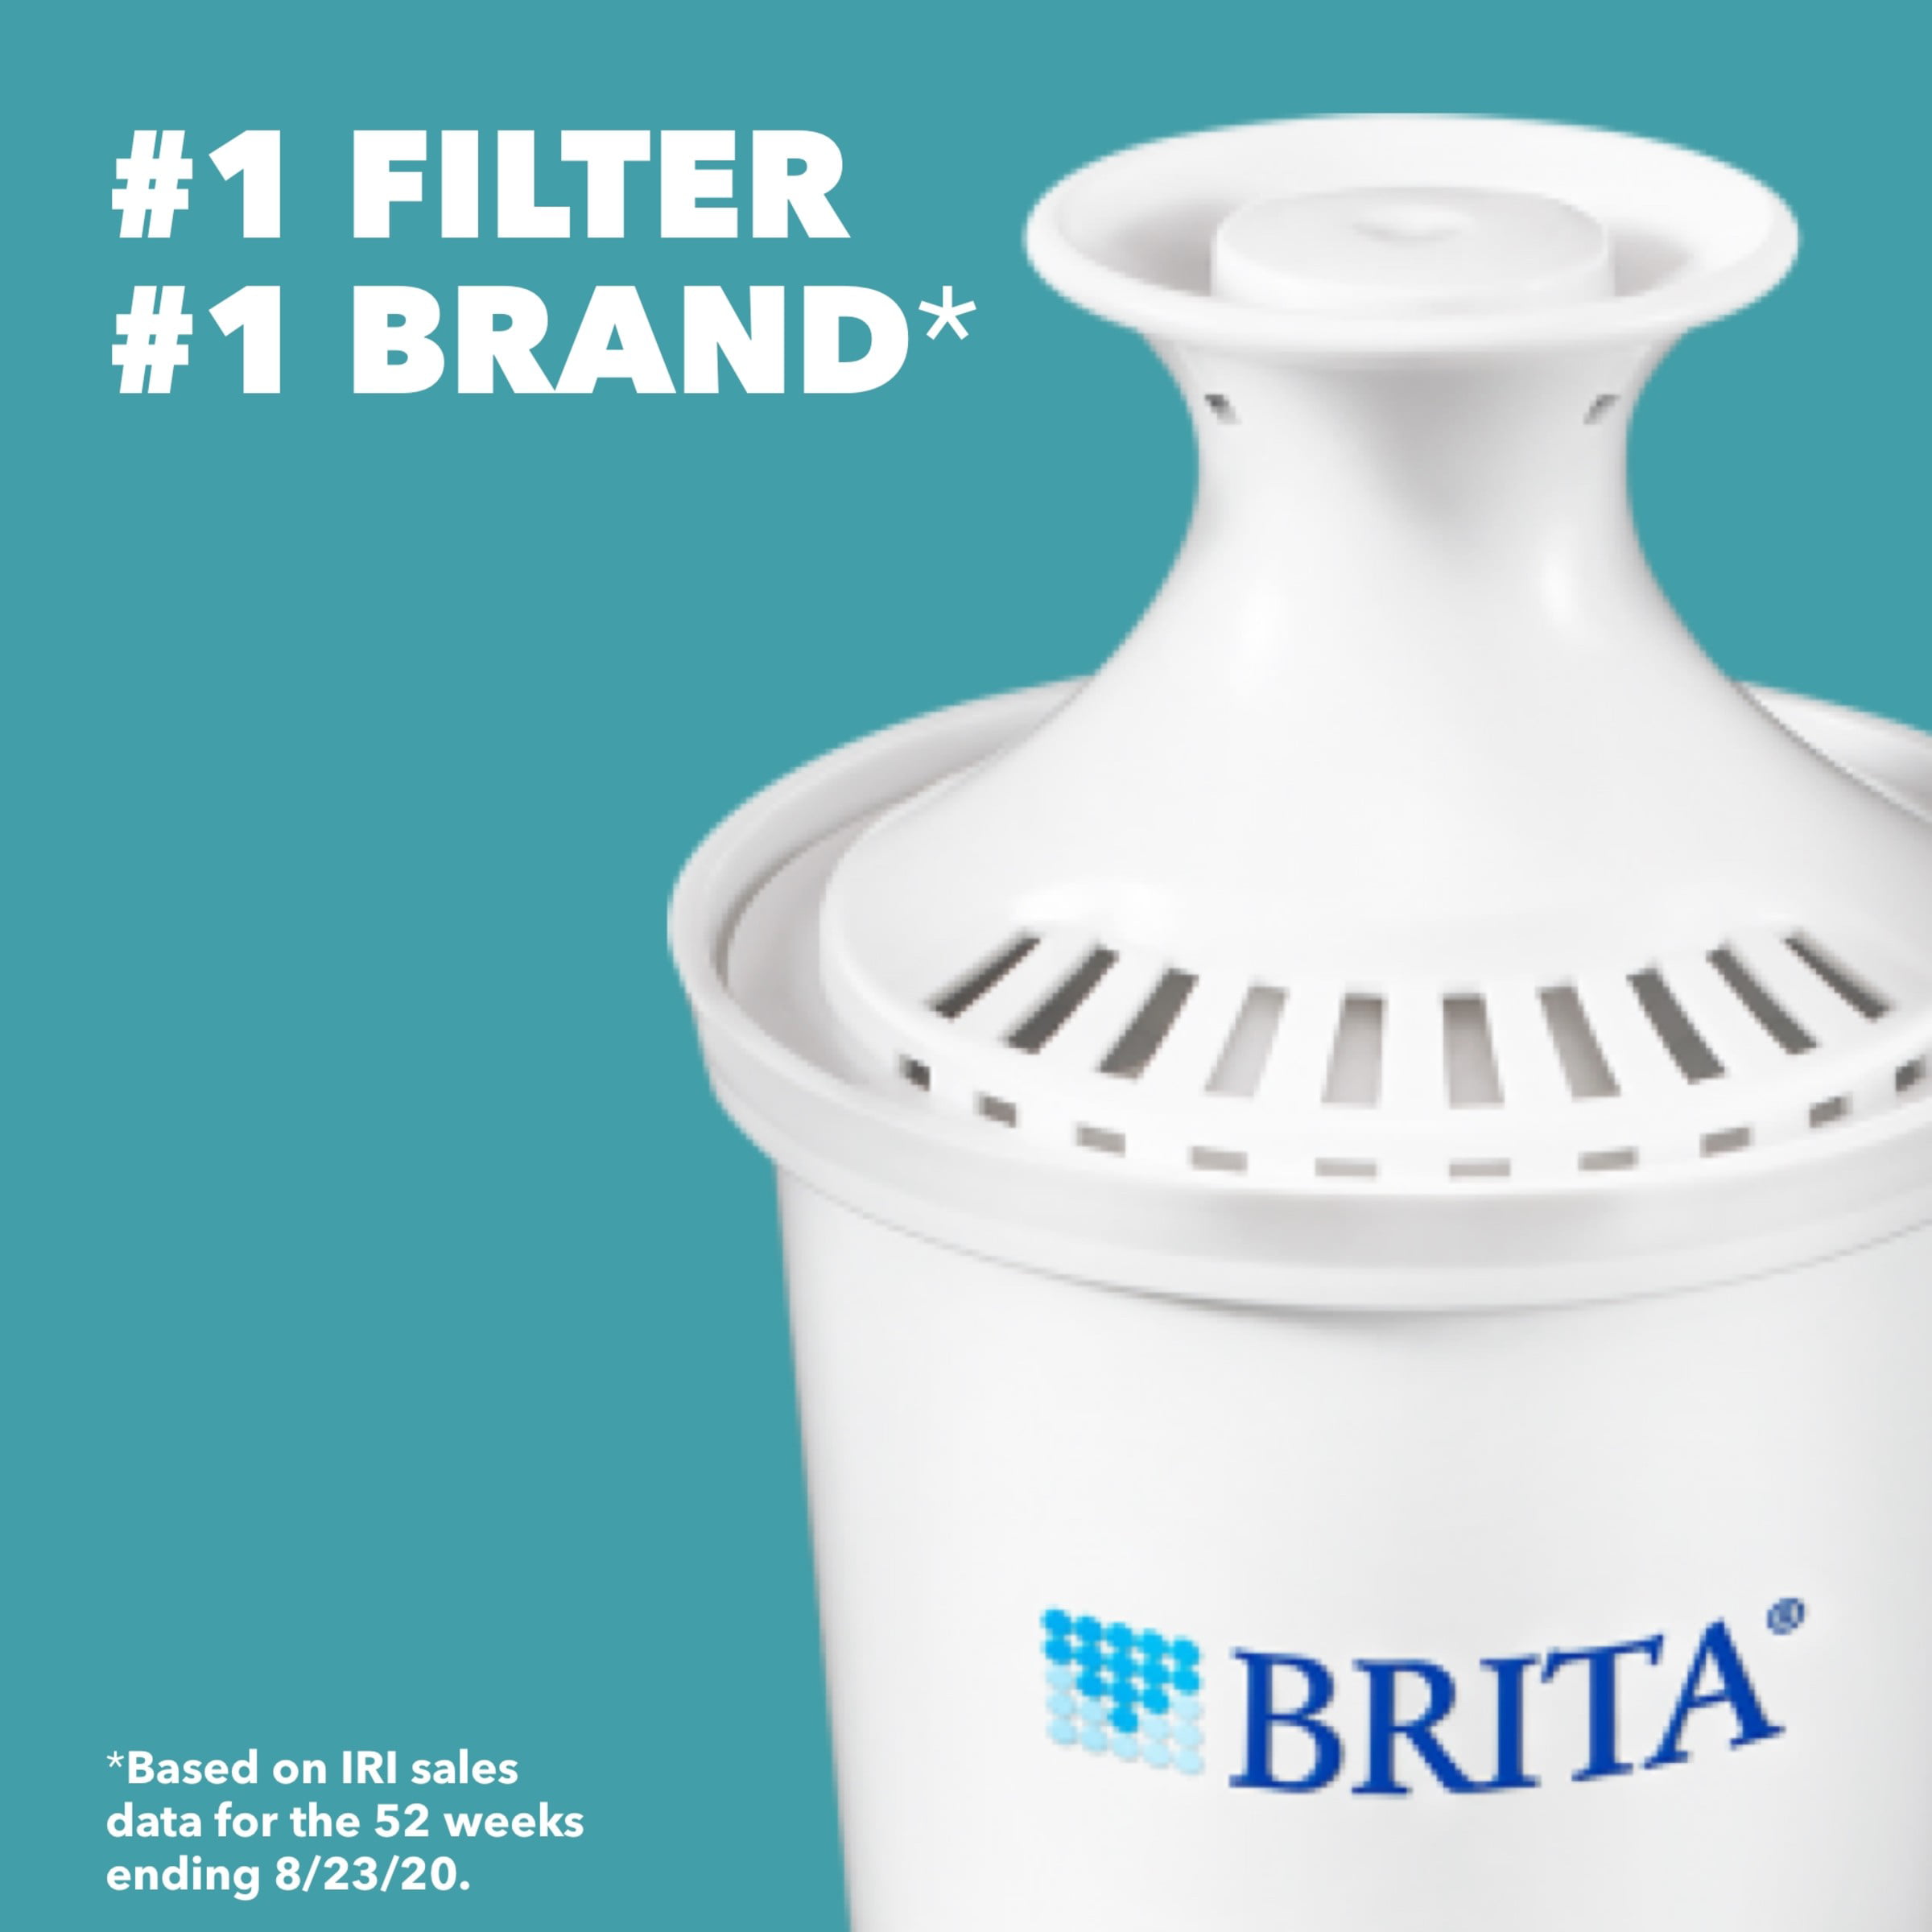 Promo Brita bouteille filtrante blanc graphite + 6 filtres